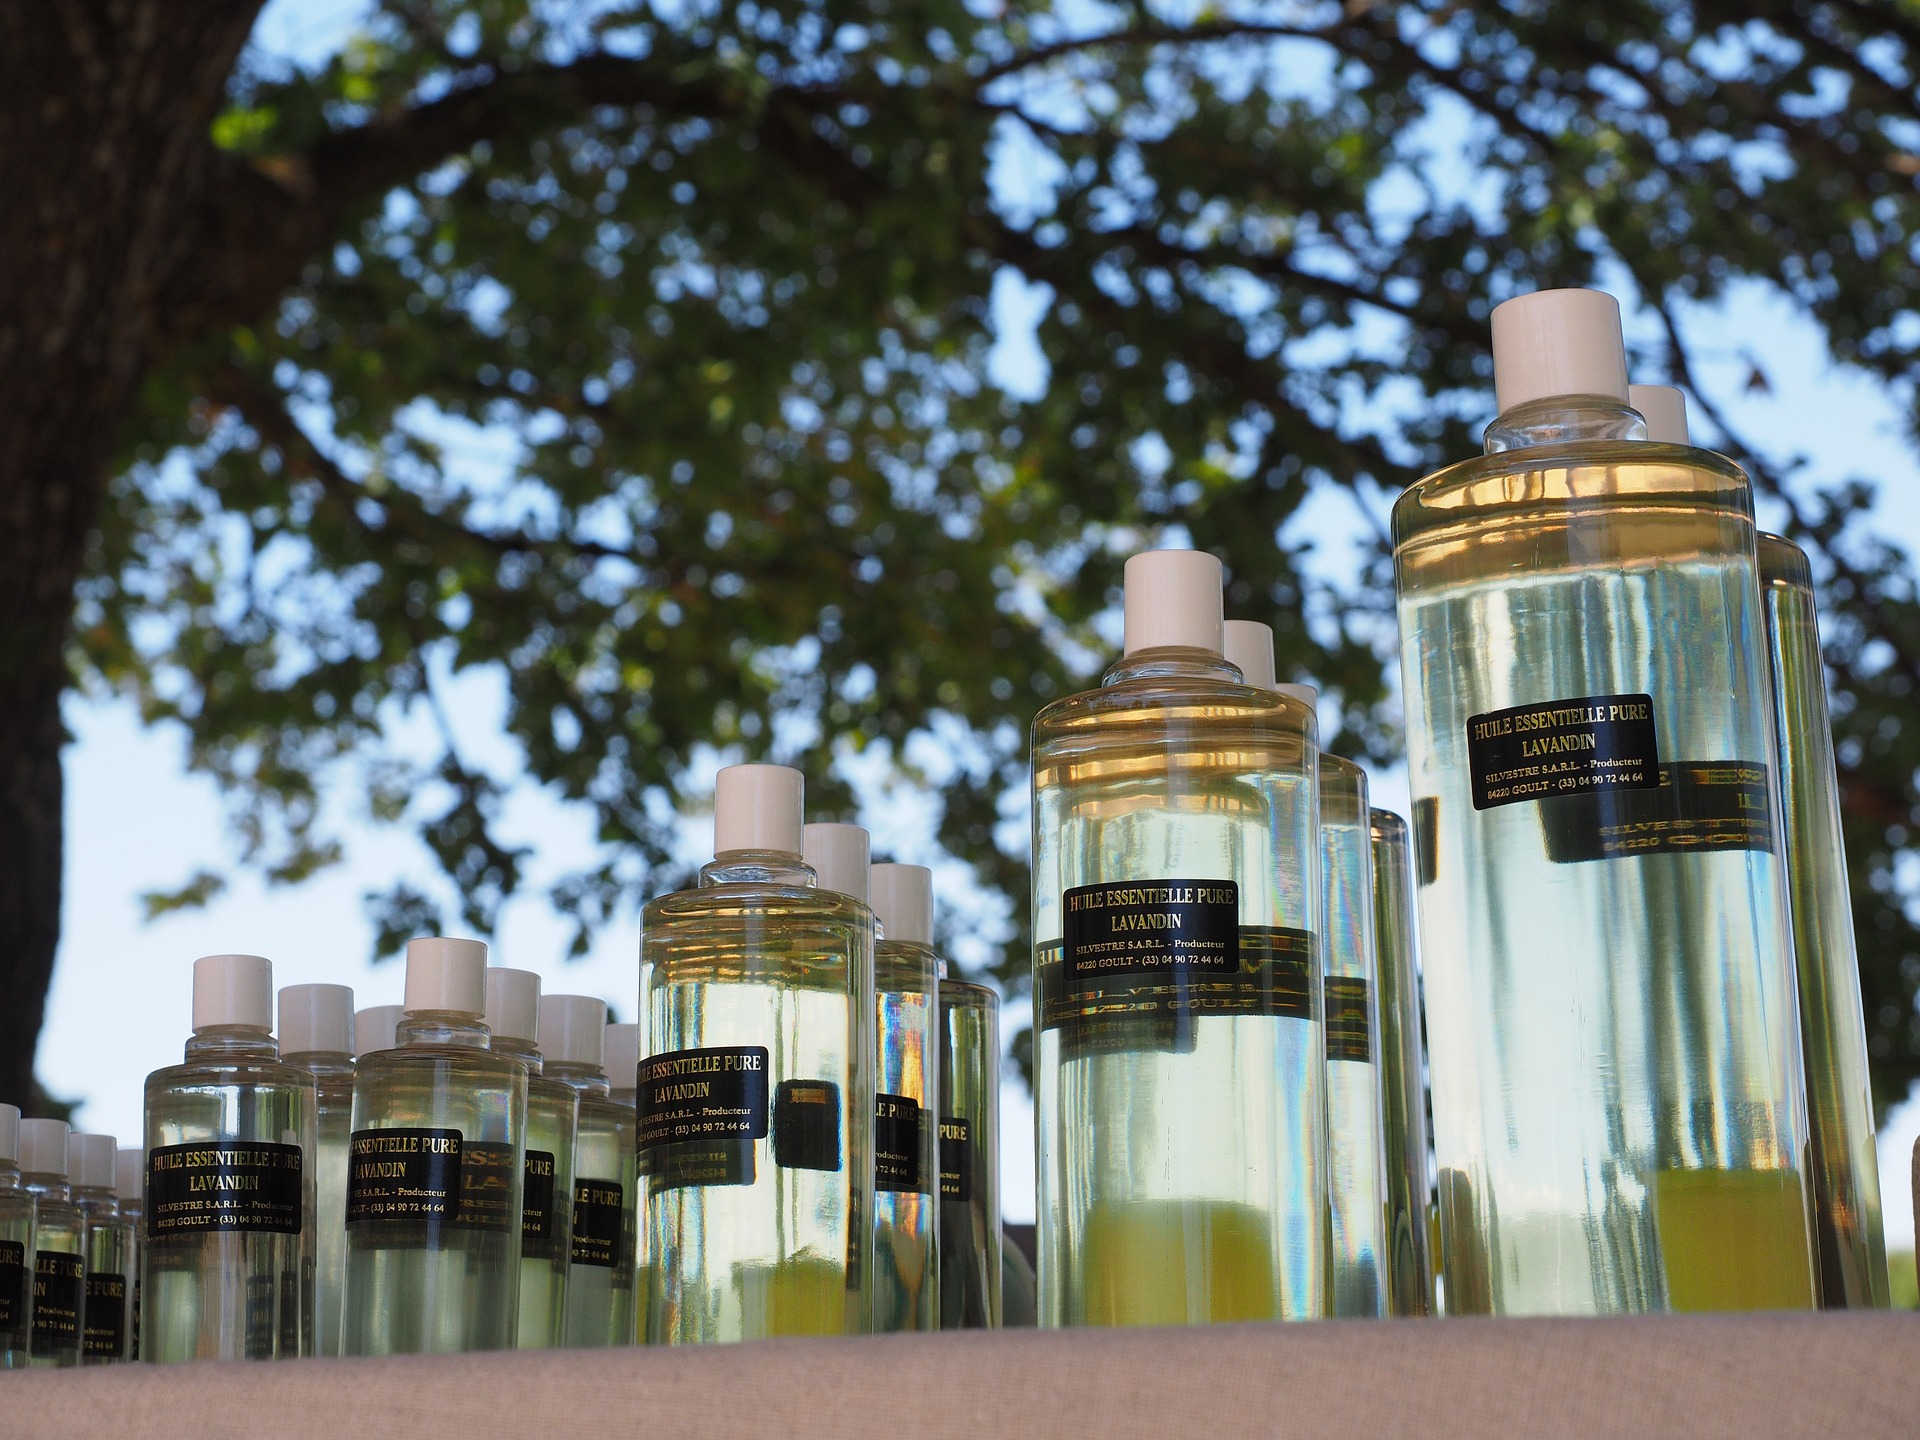 Badania odorów – jak naukowcy sprawdzają nasze reakcje na zapachy?